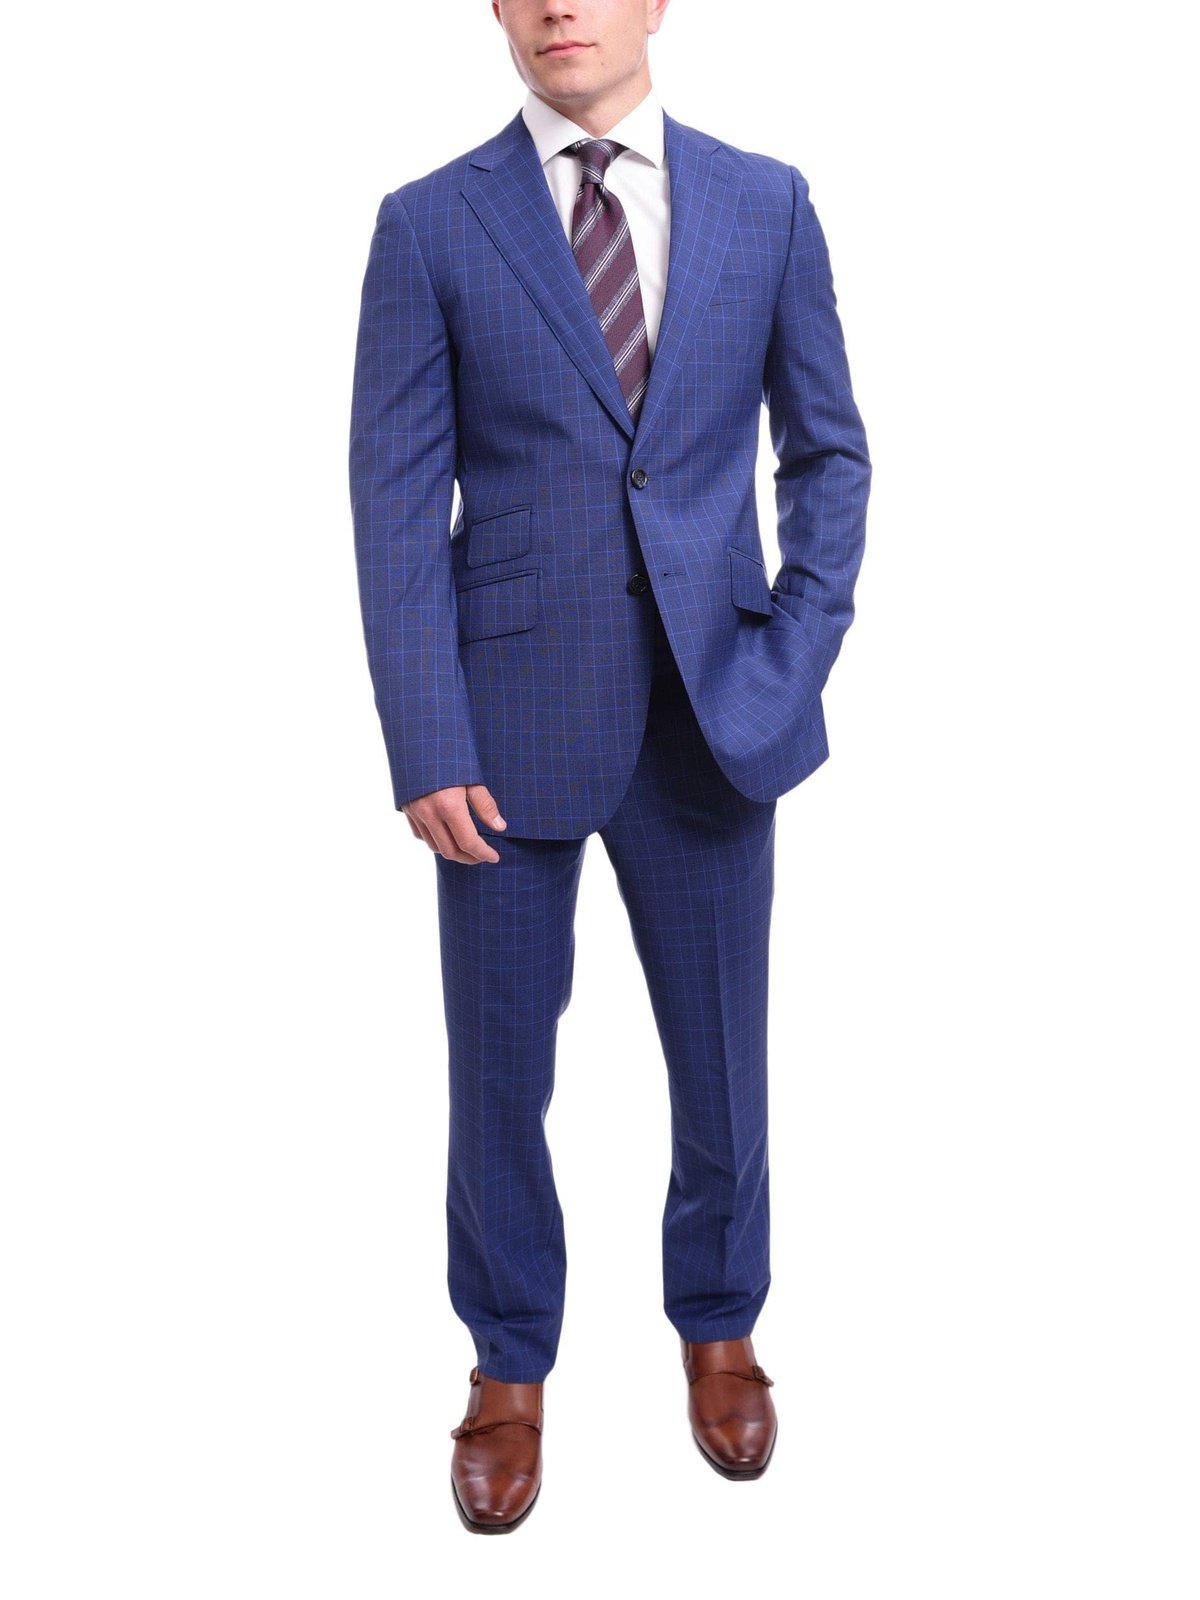 Napoli TWO PIECE SUITS Men's Napoli Slim Fit Blue Glen Plaid 2 Button Super 150s 100% Italian Wool Suit